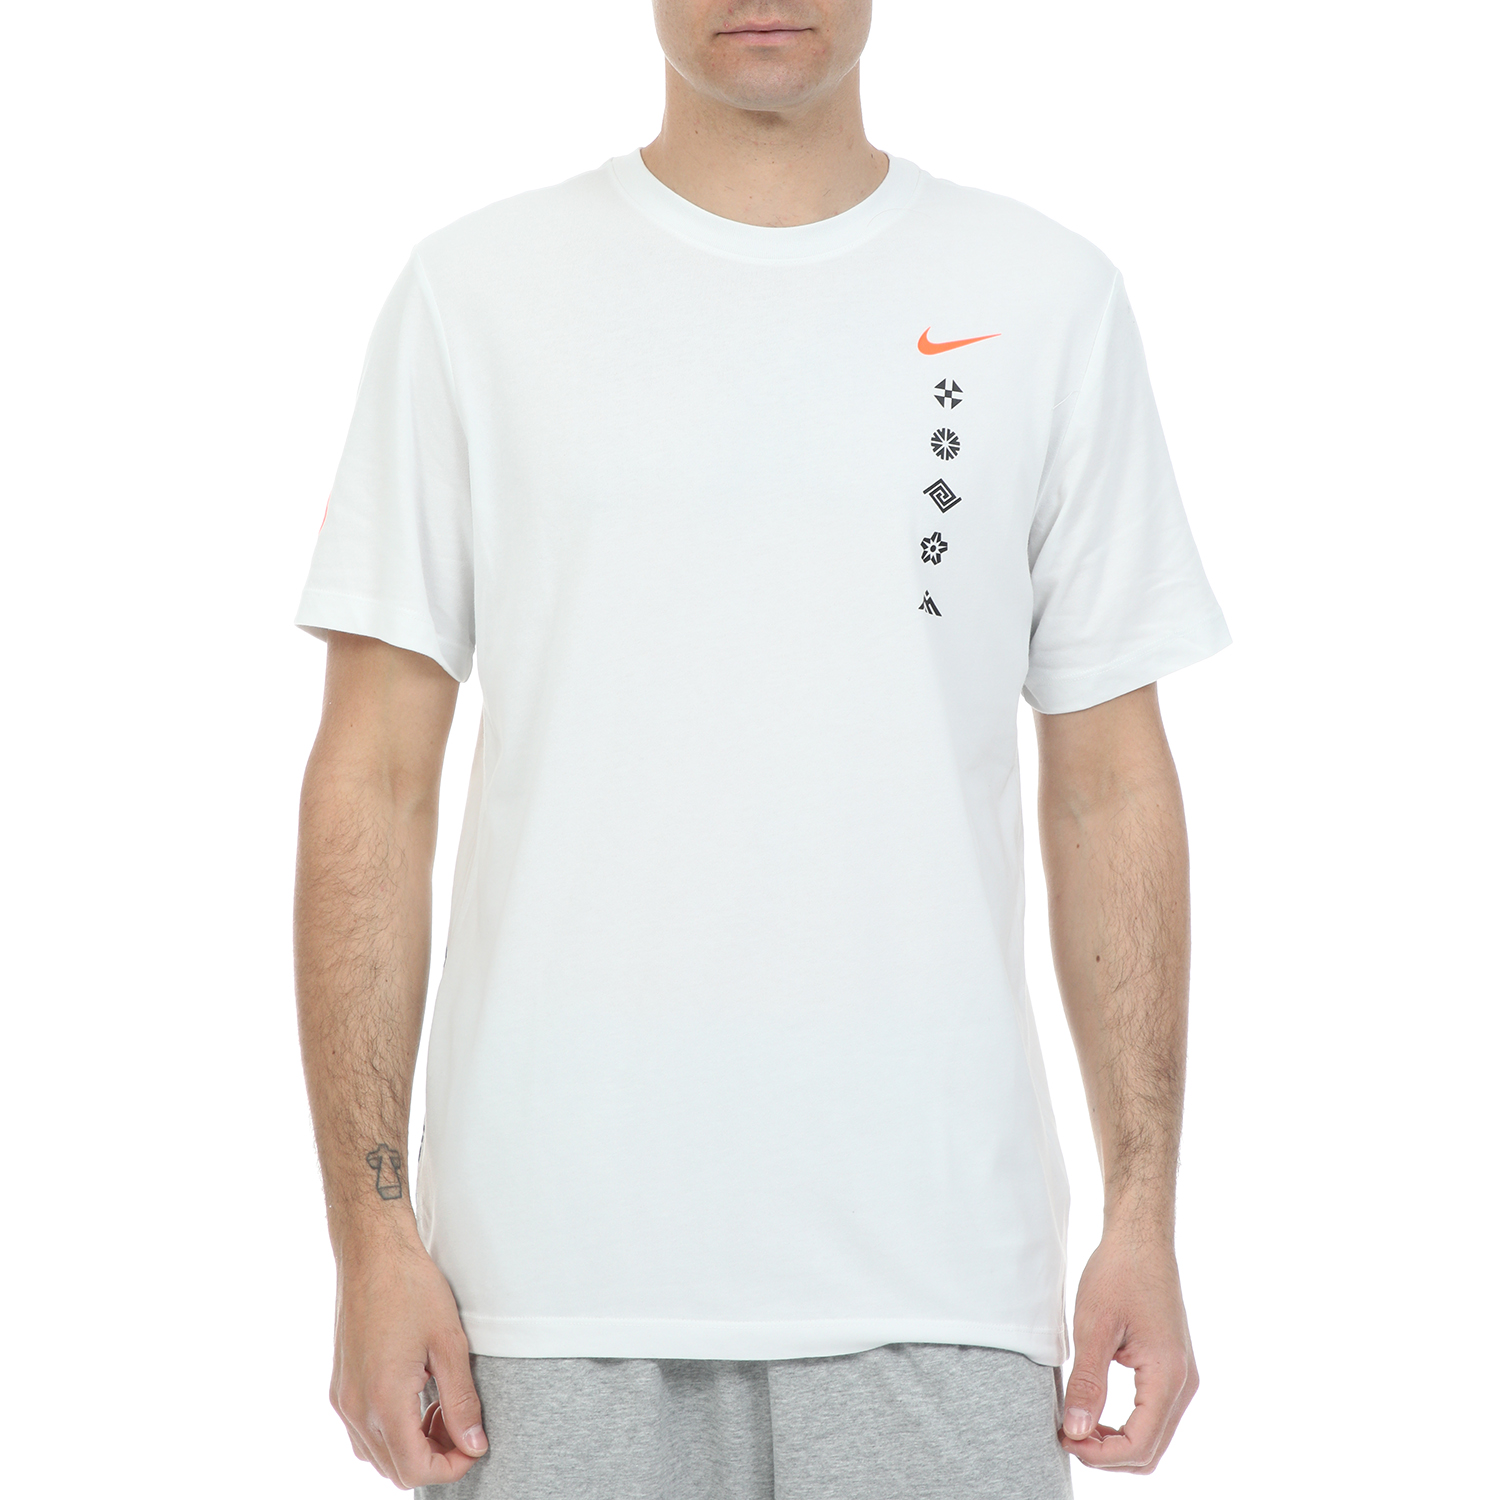 Ανδρικά/Ρούχα/Αθλητικά/T-shirt NIKE - Ανδρικό t-shirt NIKE DRY TEE HAKONE EKIDEN λευκό